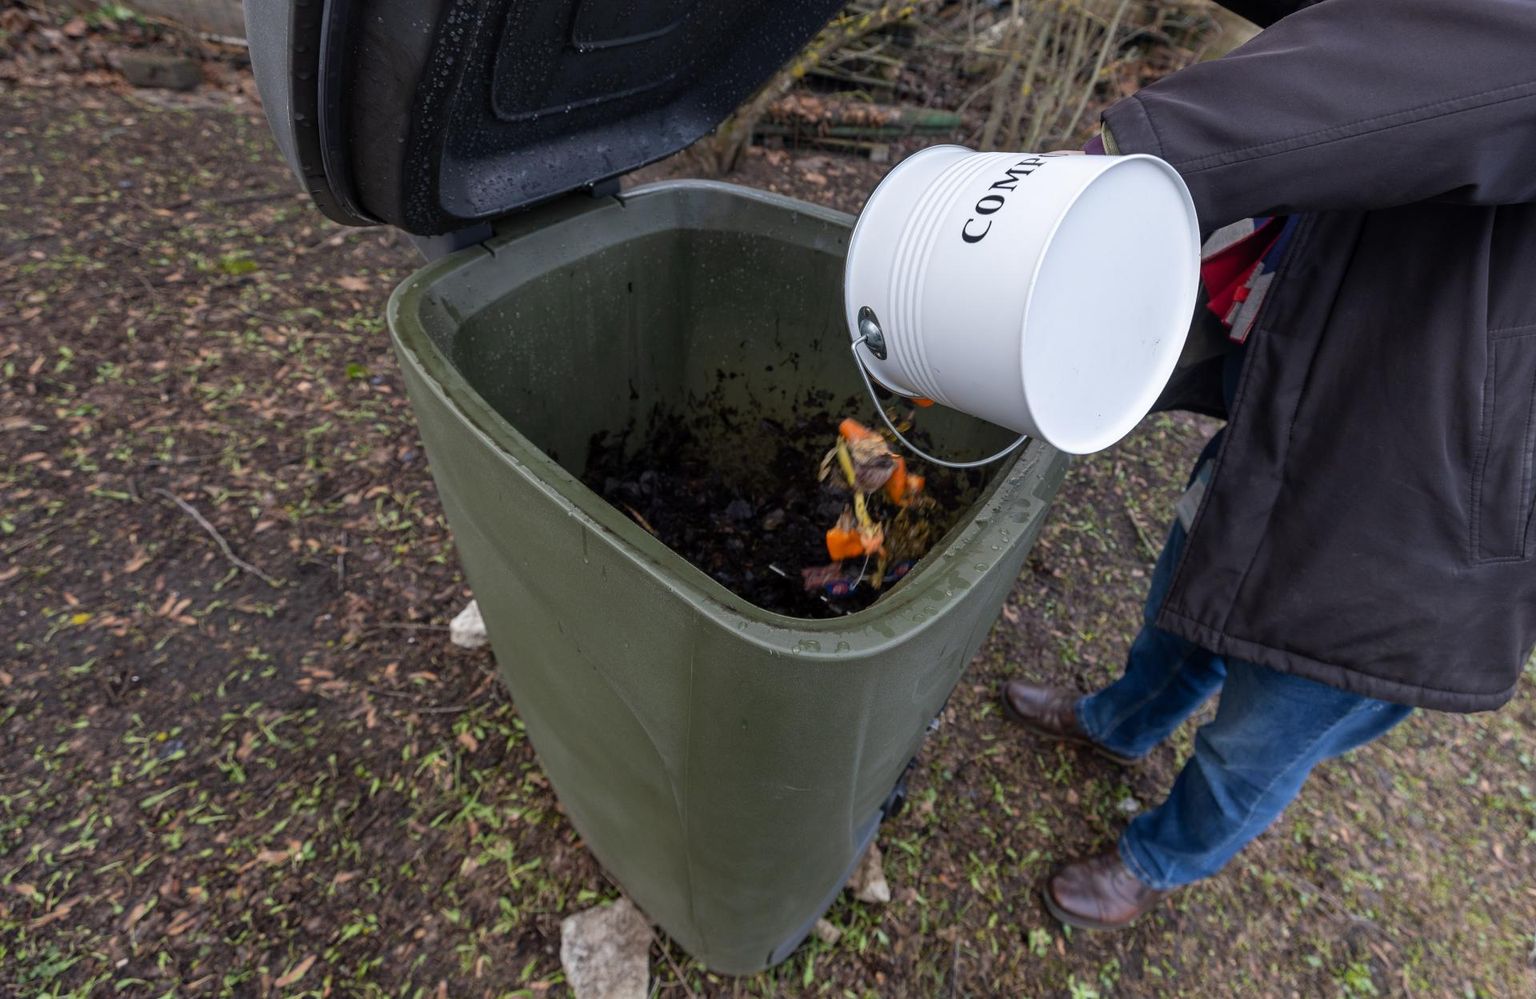 Alates 1. aprillist ei tohi biojäätmed enam olmeprügi hulka sattuda, vaid tuleb panna kas eraldi konteinerisse või kohapeal kompostida.